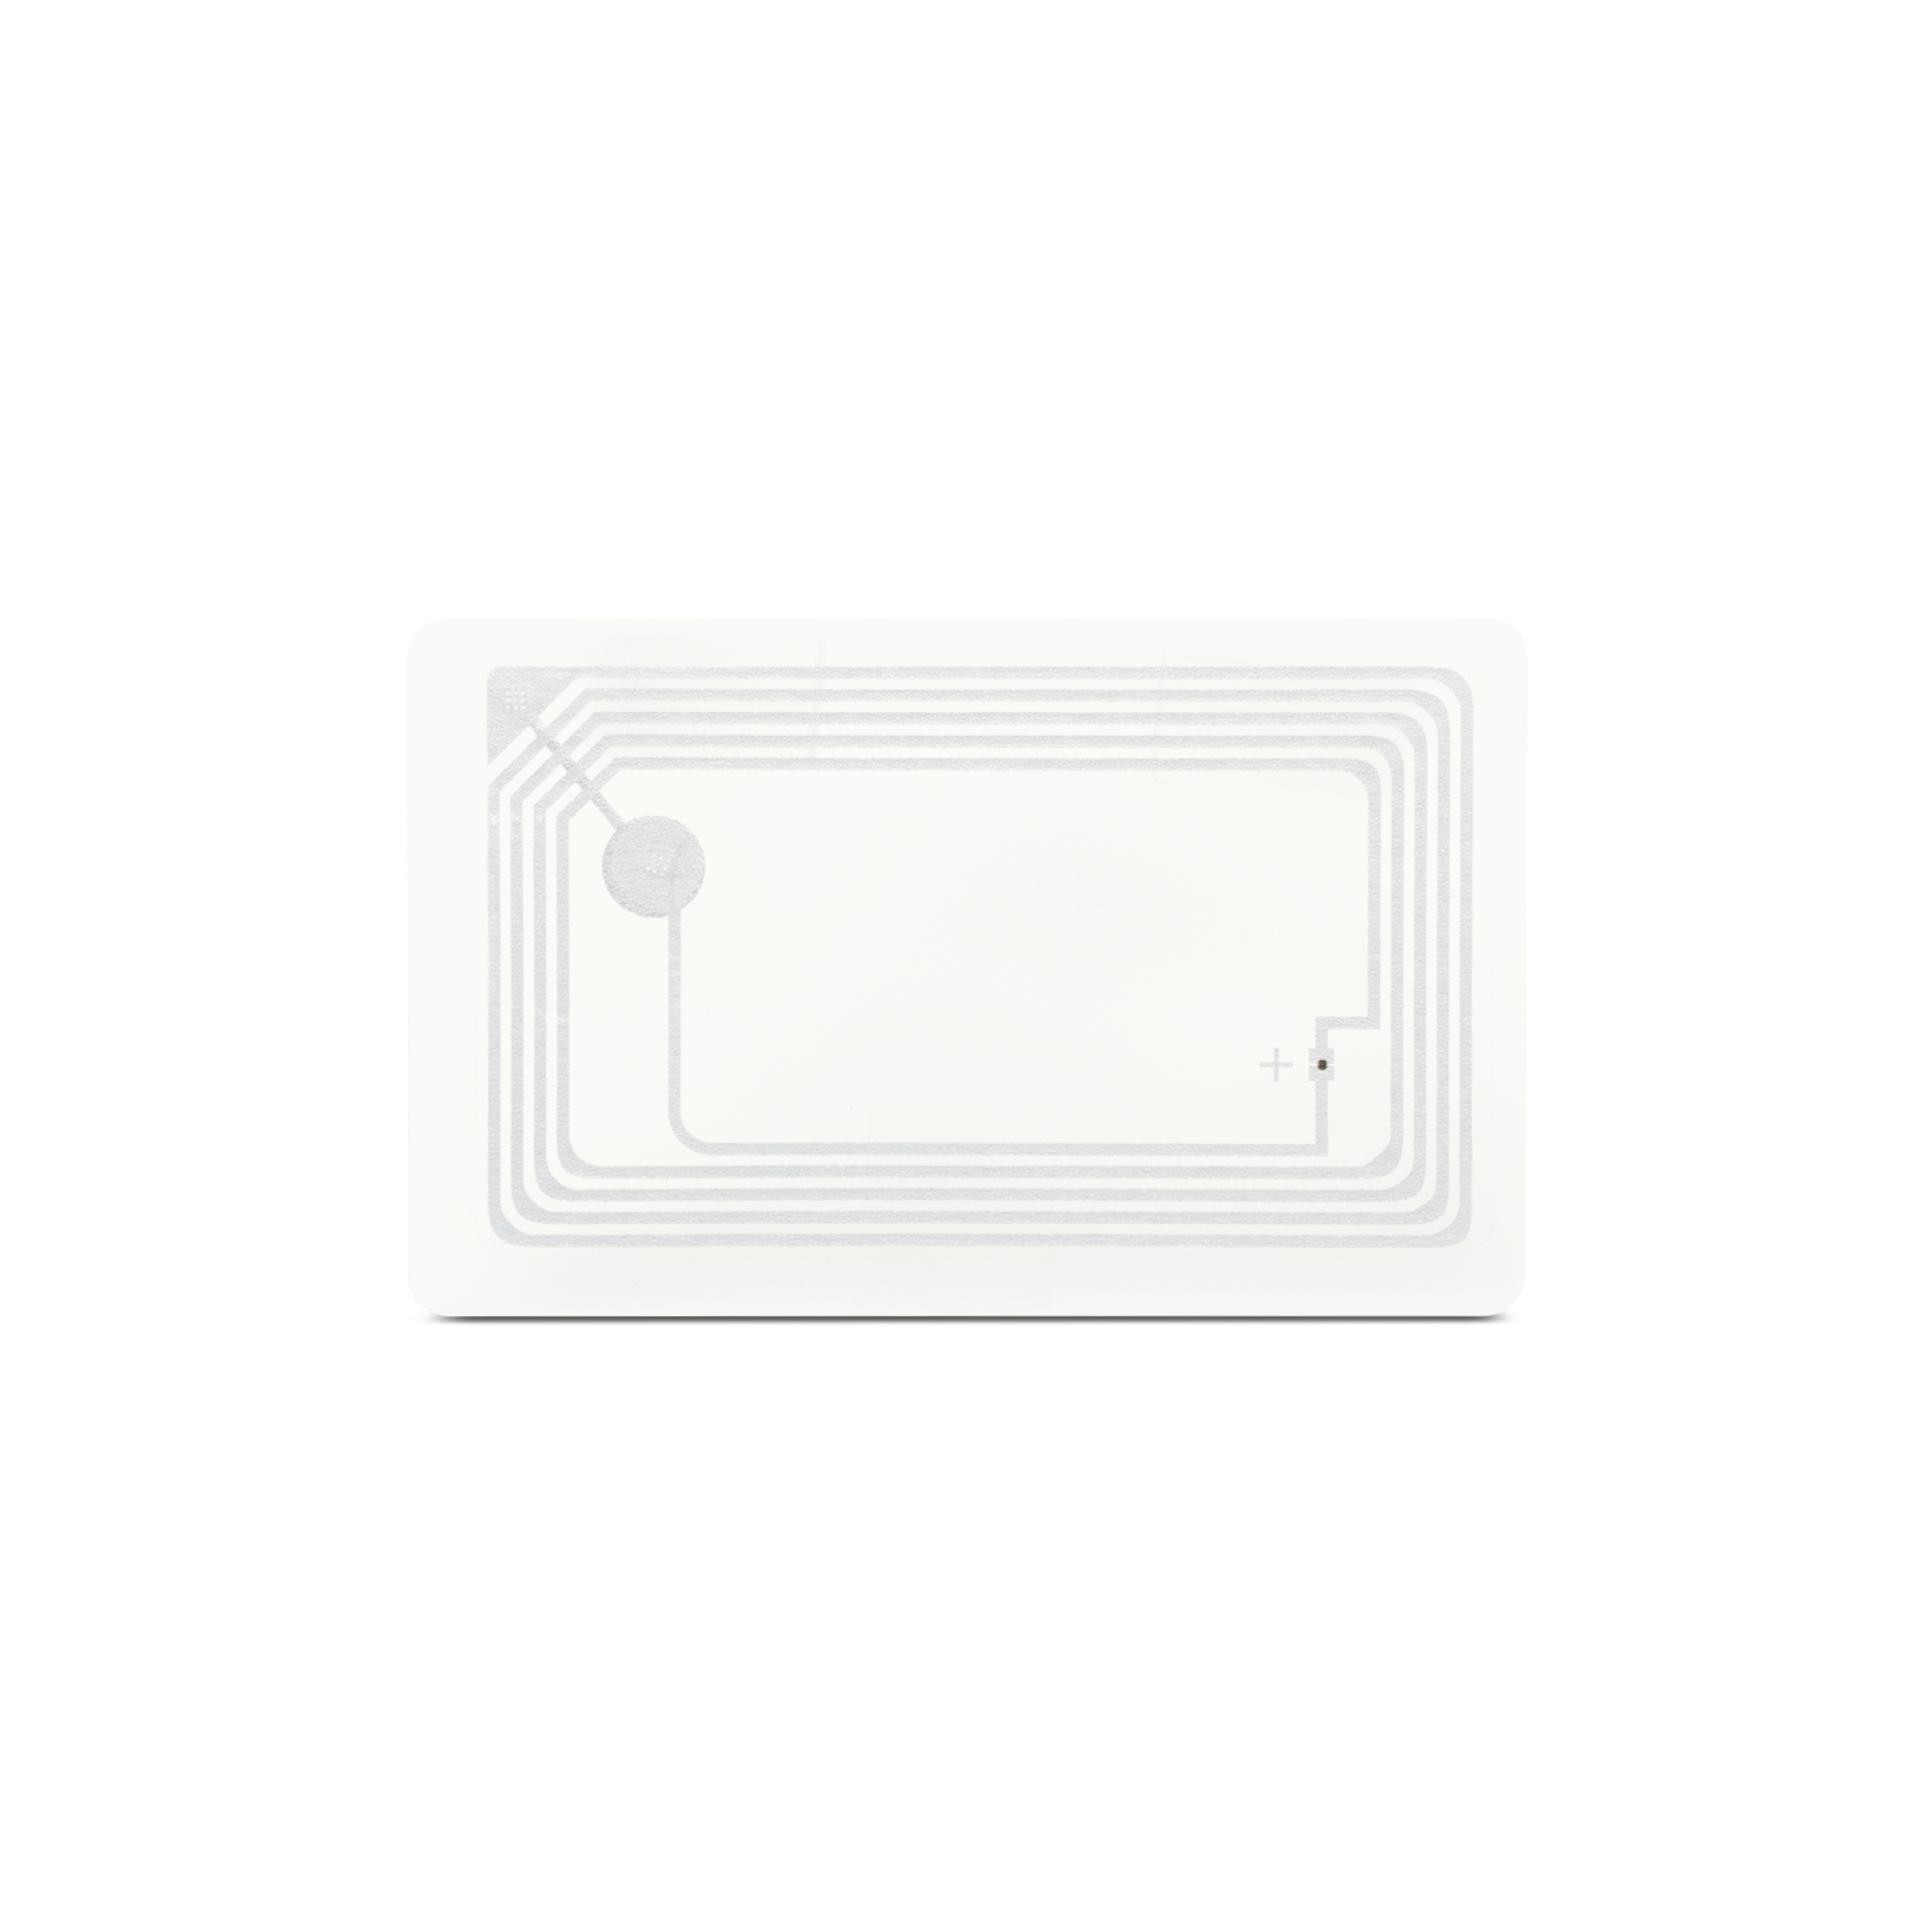 NFC Card PVC - 85,6 x 54 mm - NTAG213 - 180 Byte - transparent